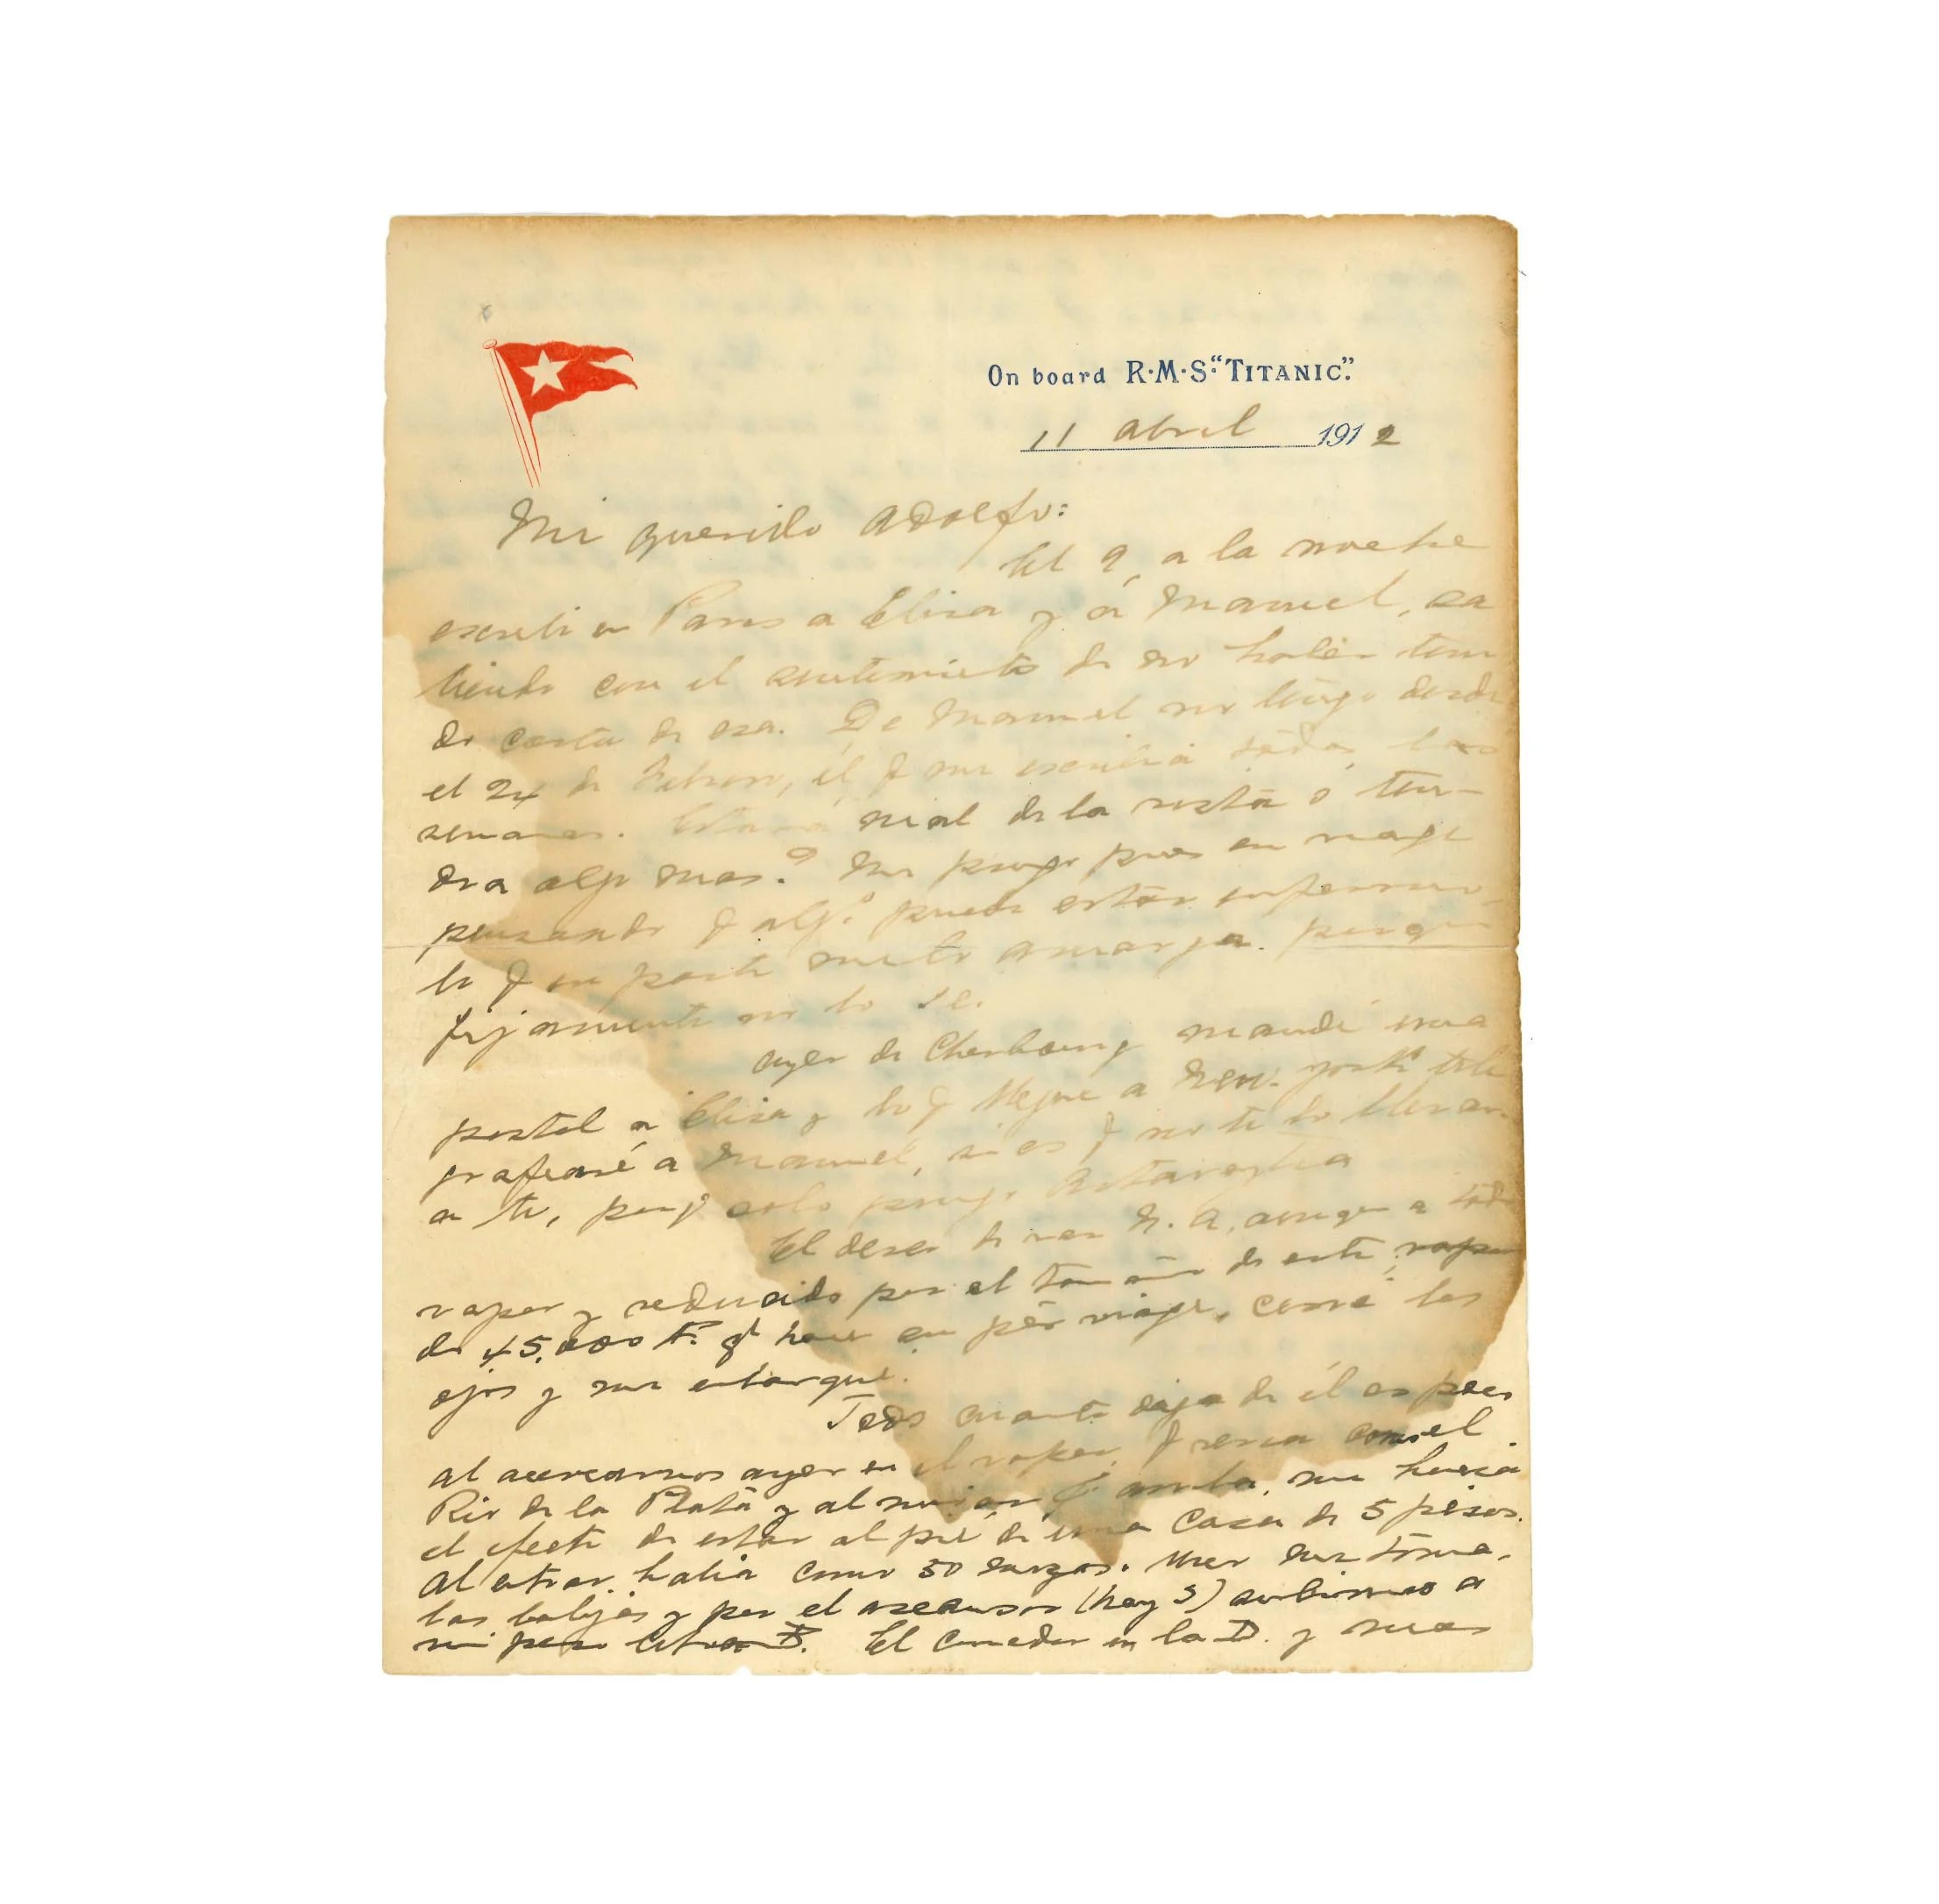 La carta enviada por Ramón Artagaveytia Gómez a su hermano (Zorrilla Subastas)